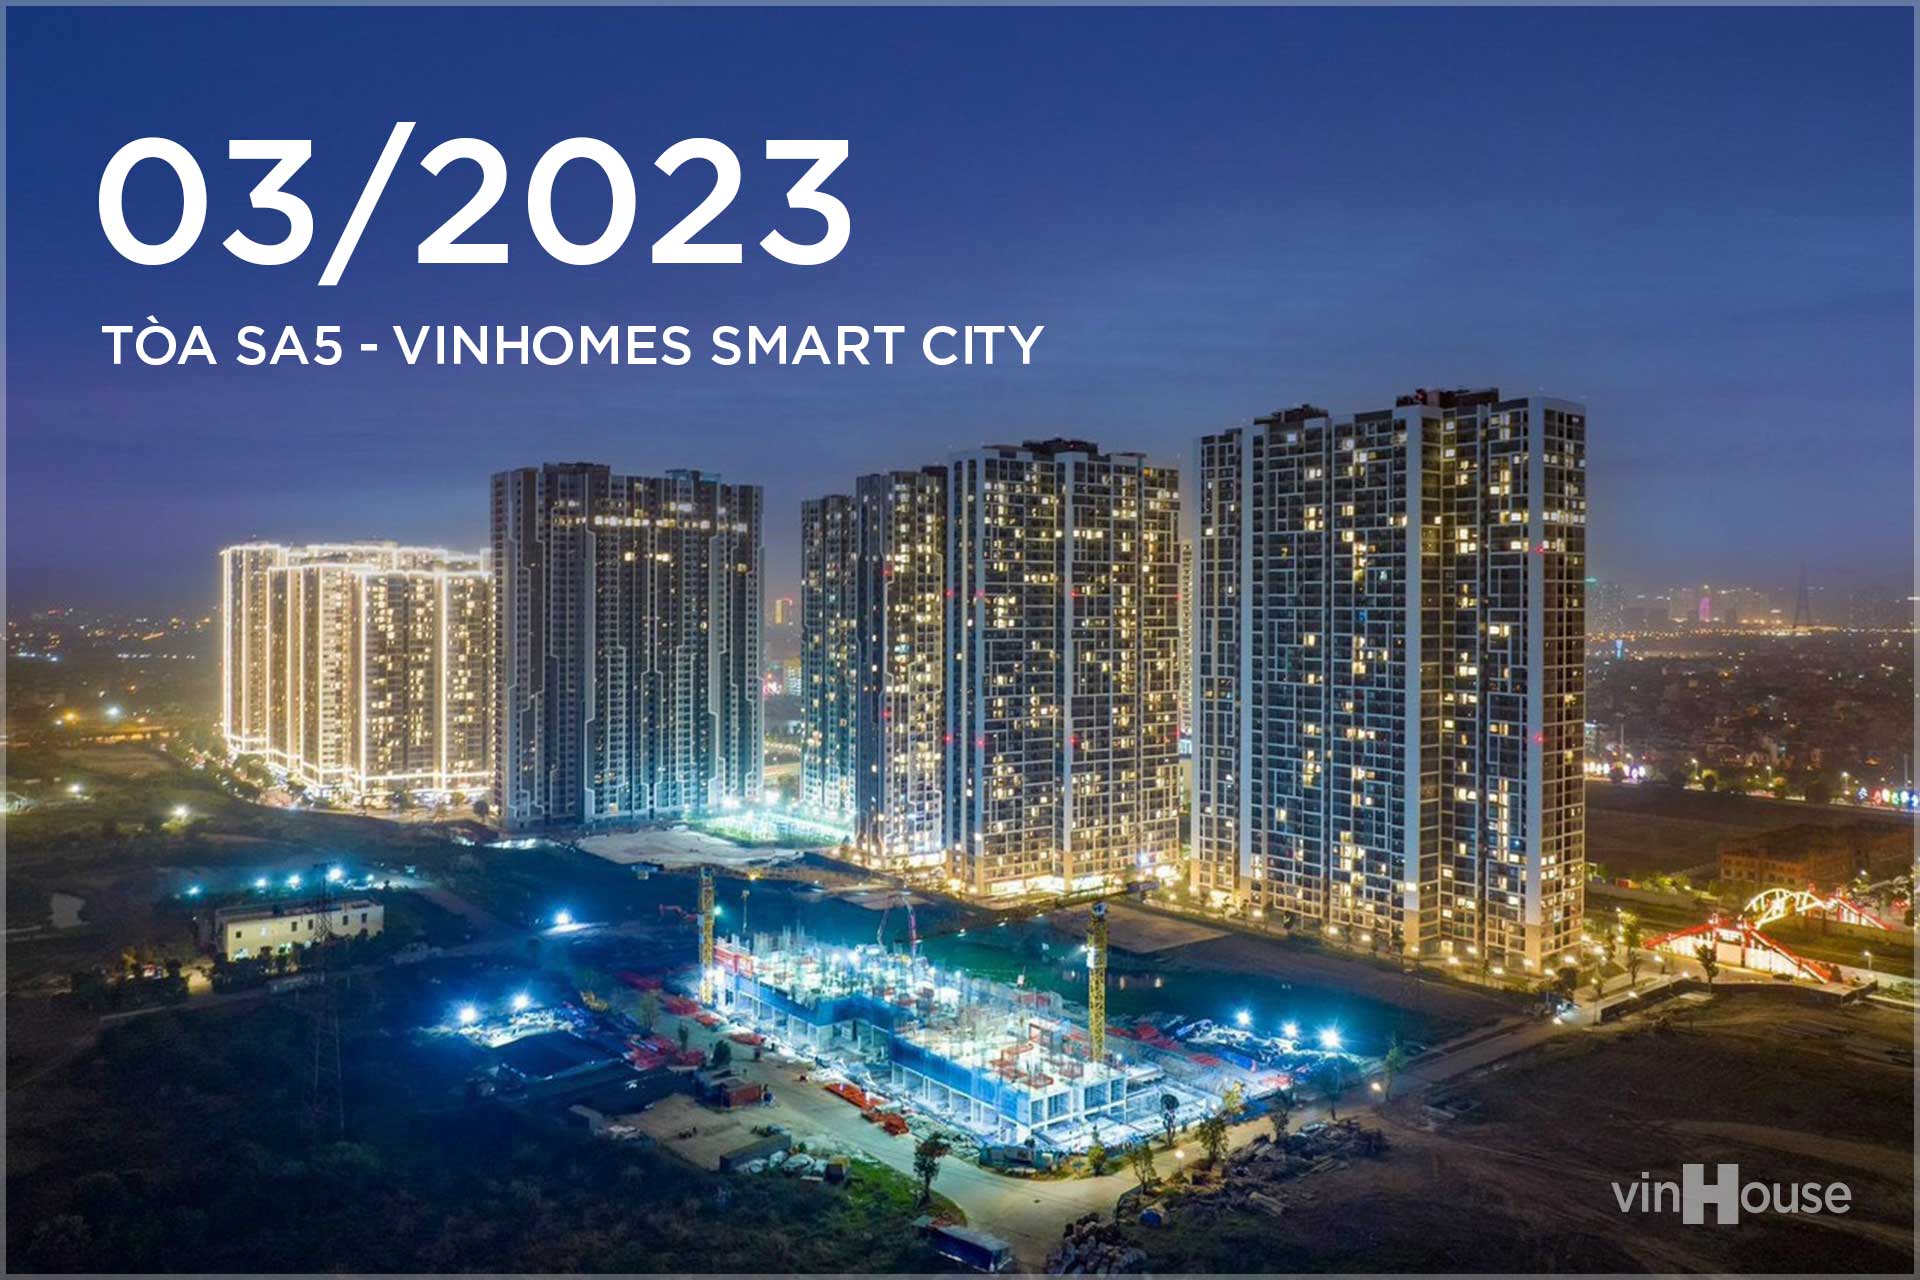 You are currently viewing Tiến độ tòa SA5 Vinhomes Smart City Tháng 3 – 2023